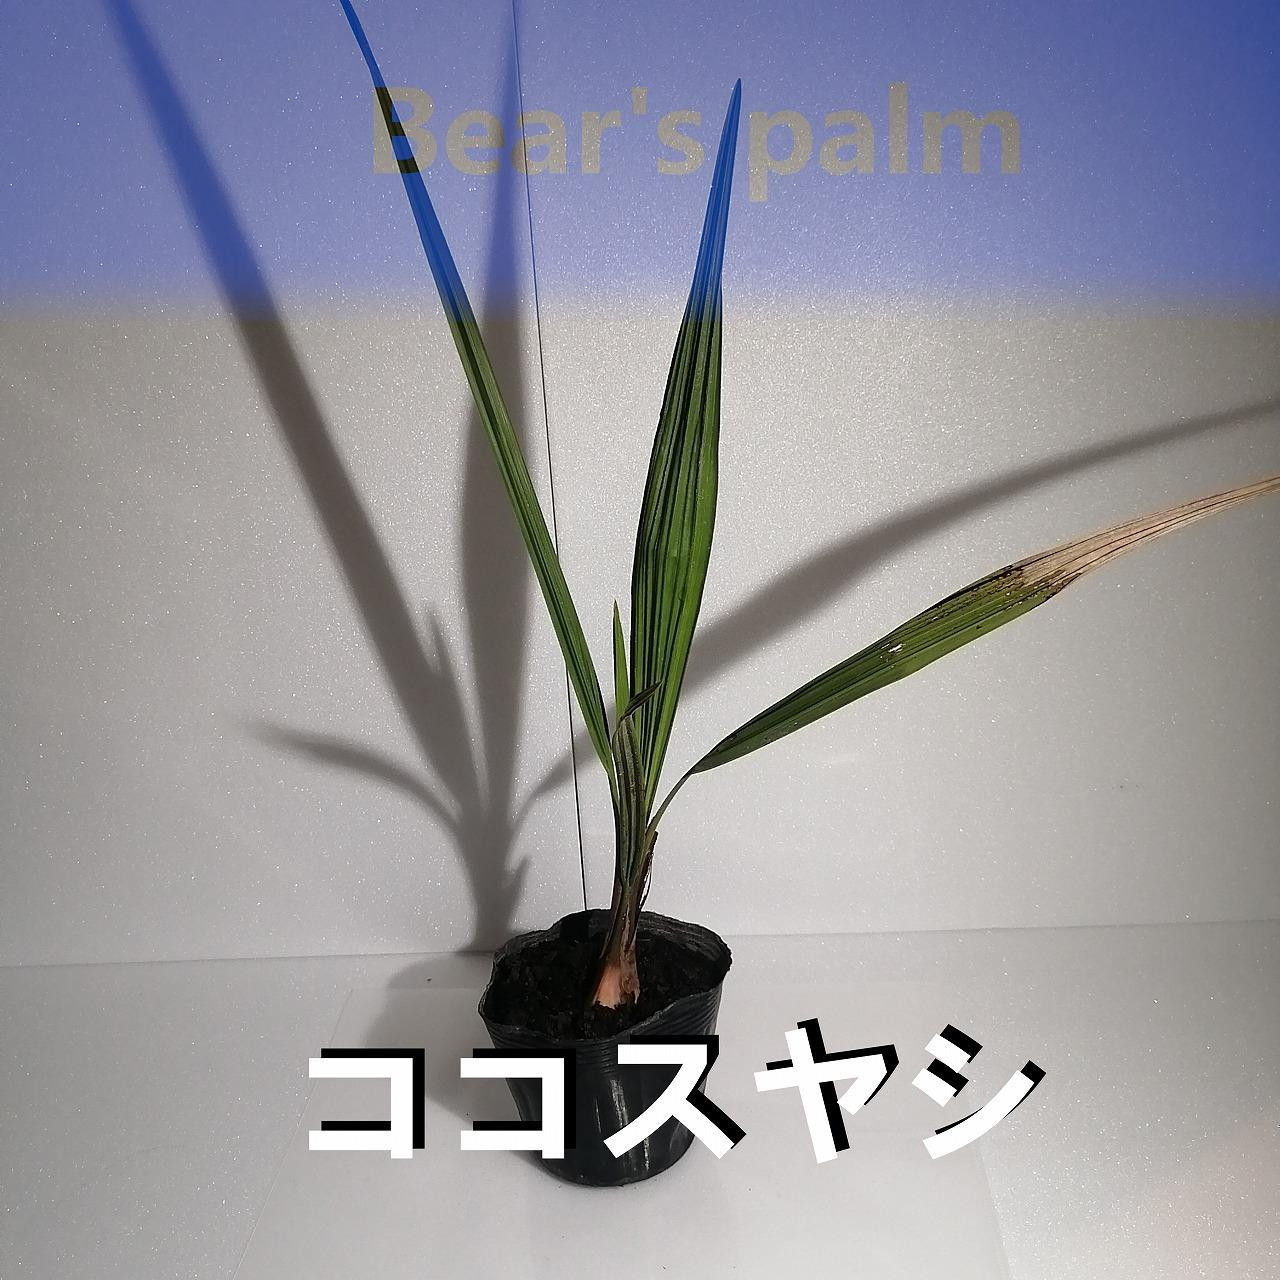 
ココスヤシ_栃木県大田原市生産品_Bear‘s palm
